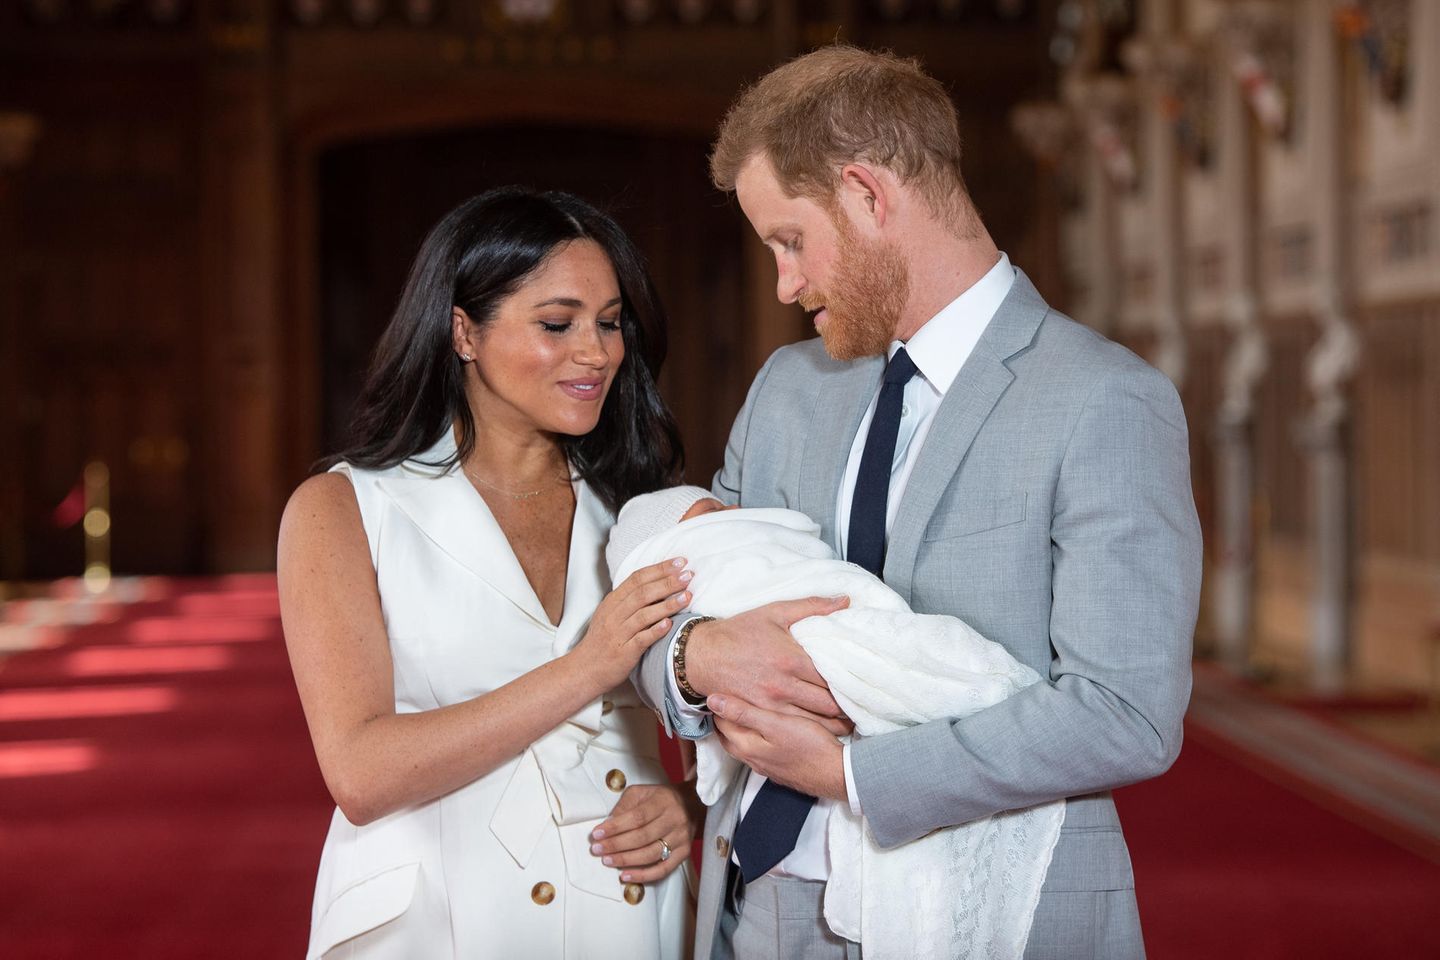 Herzogin Meghan + Prinz Harry: Das machen sie bei der Taufe anders als Herzogin Kate und Prinz William